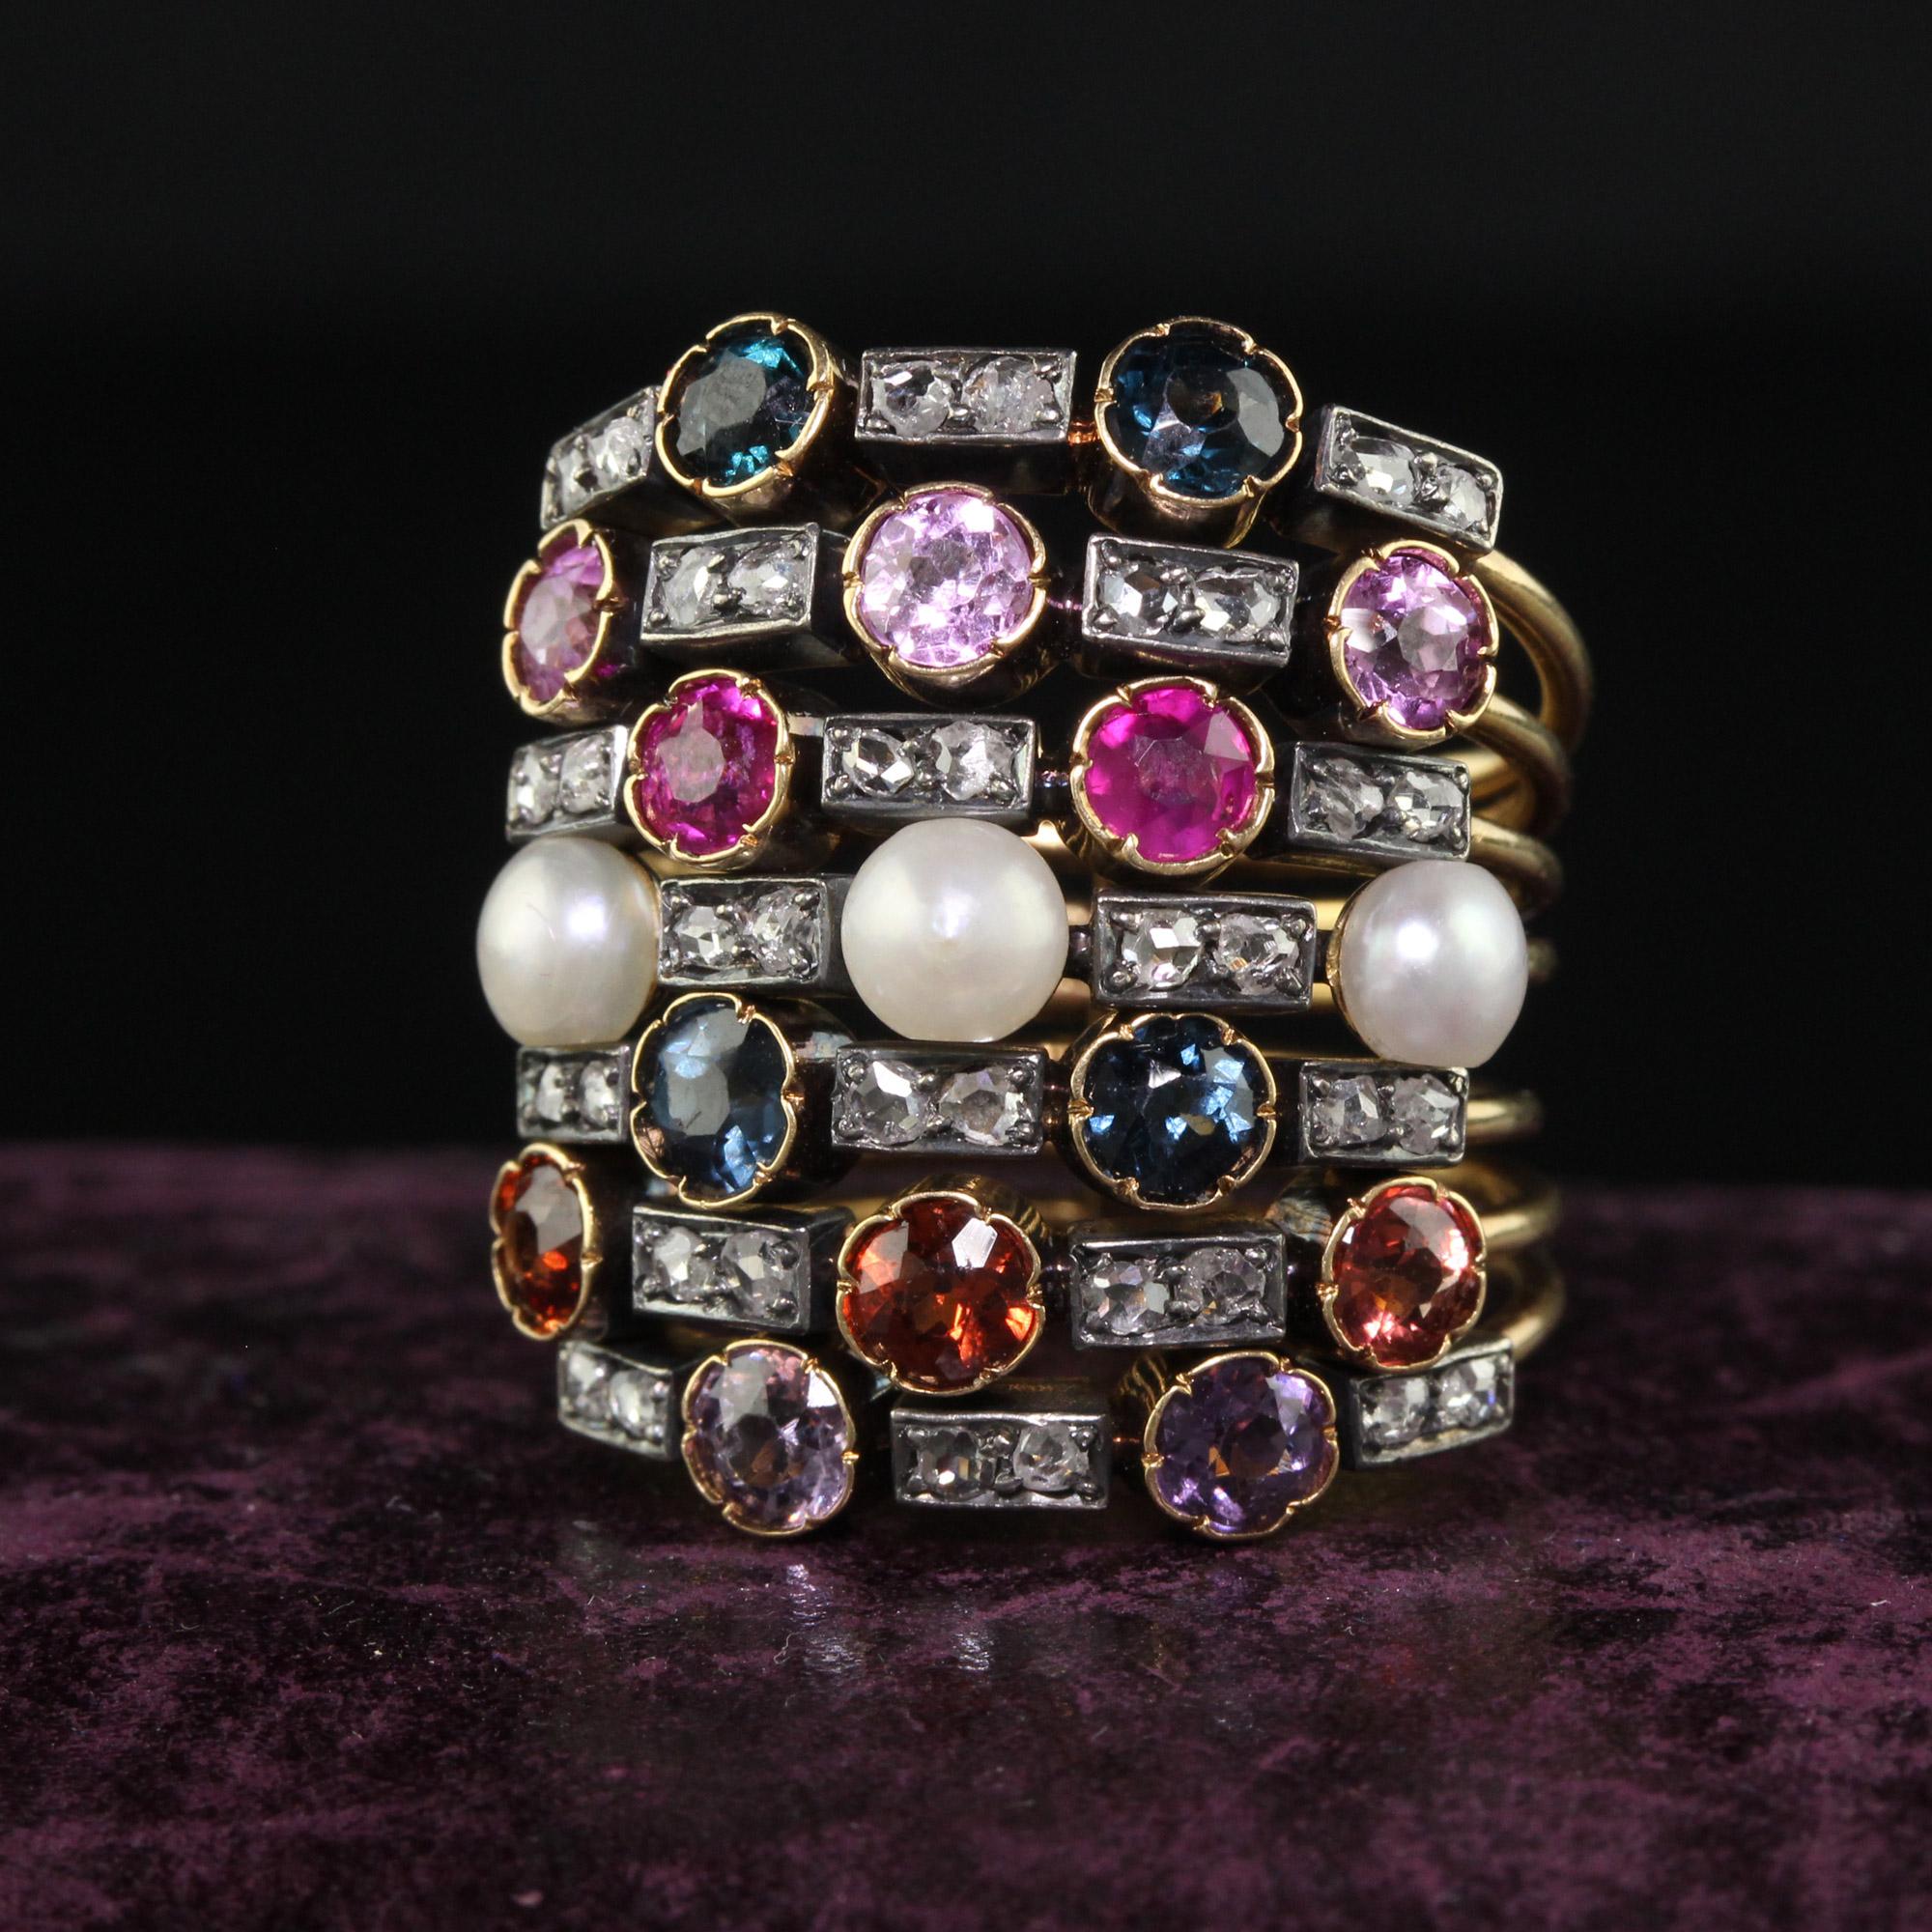 Schöne antike viktorianische 18K Gelbgold Multi Saphir Perle Rubin und Diamant Harem Ring. Dieser unglaubliche Haremsring ist aus 18k Gelbgold und Silber gefertigt. Es gibt eine bunte Reihe von Saphiren, Diamanten und Perlen auf dieser unglaublichen